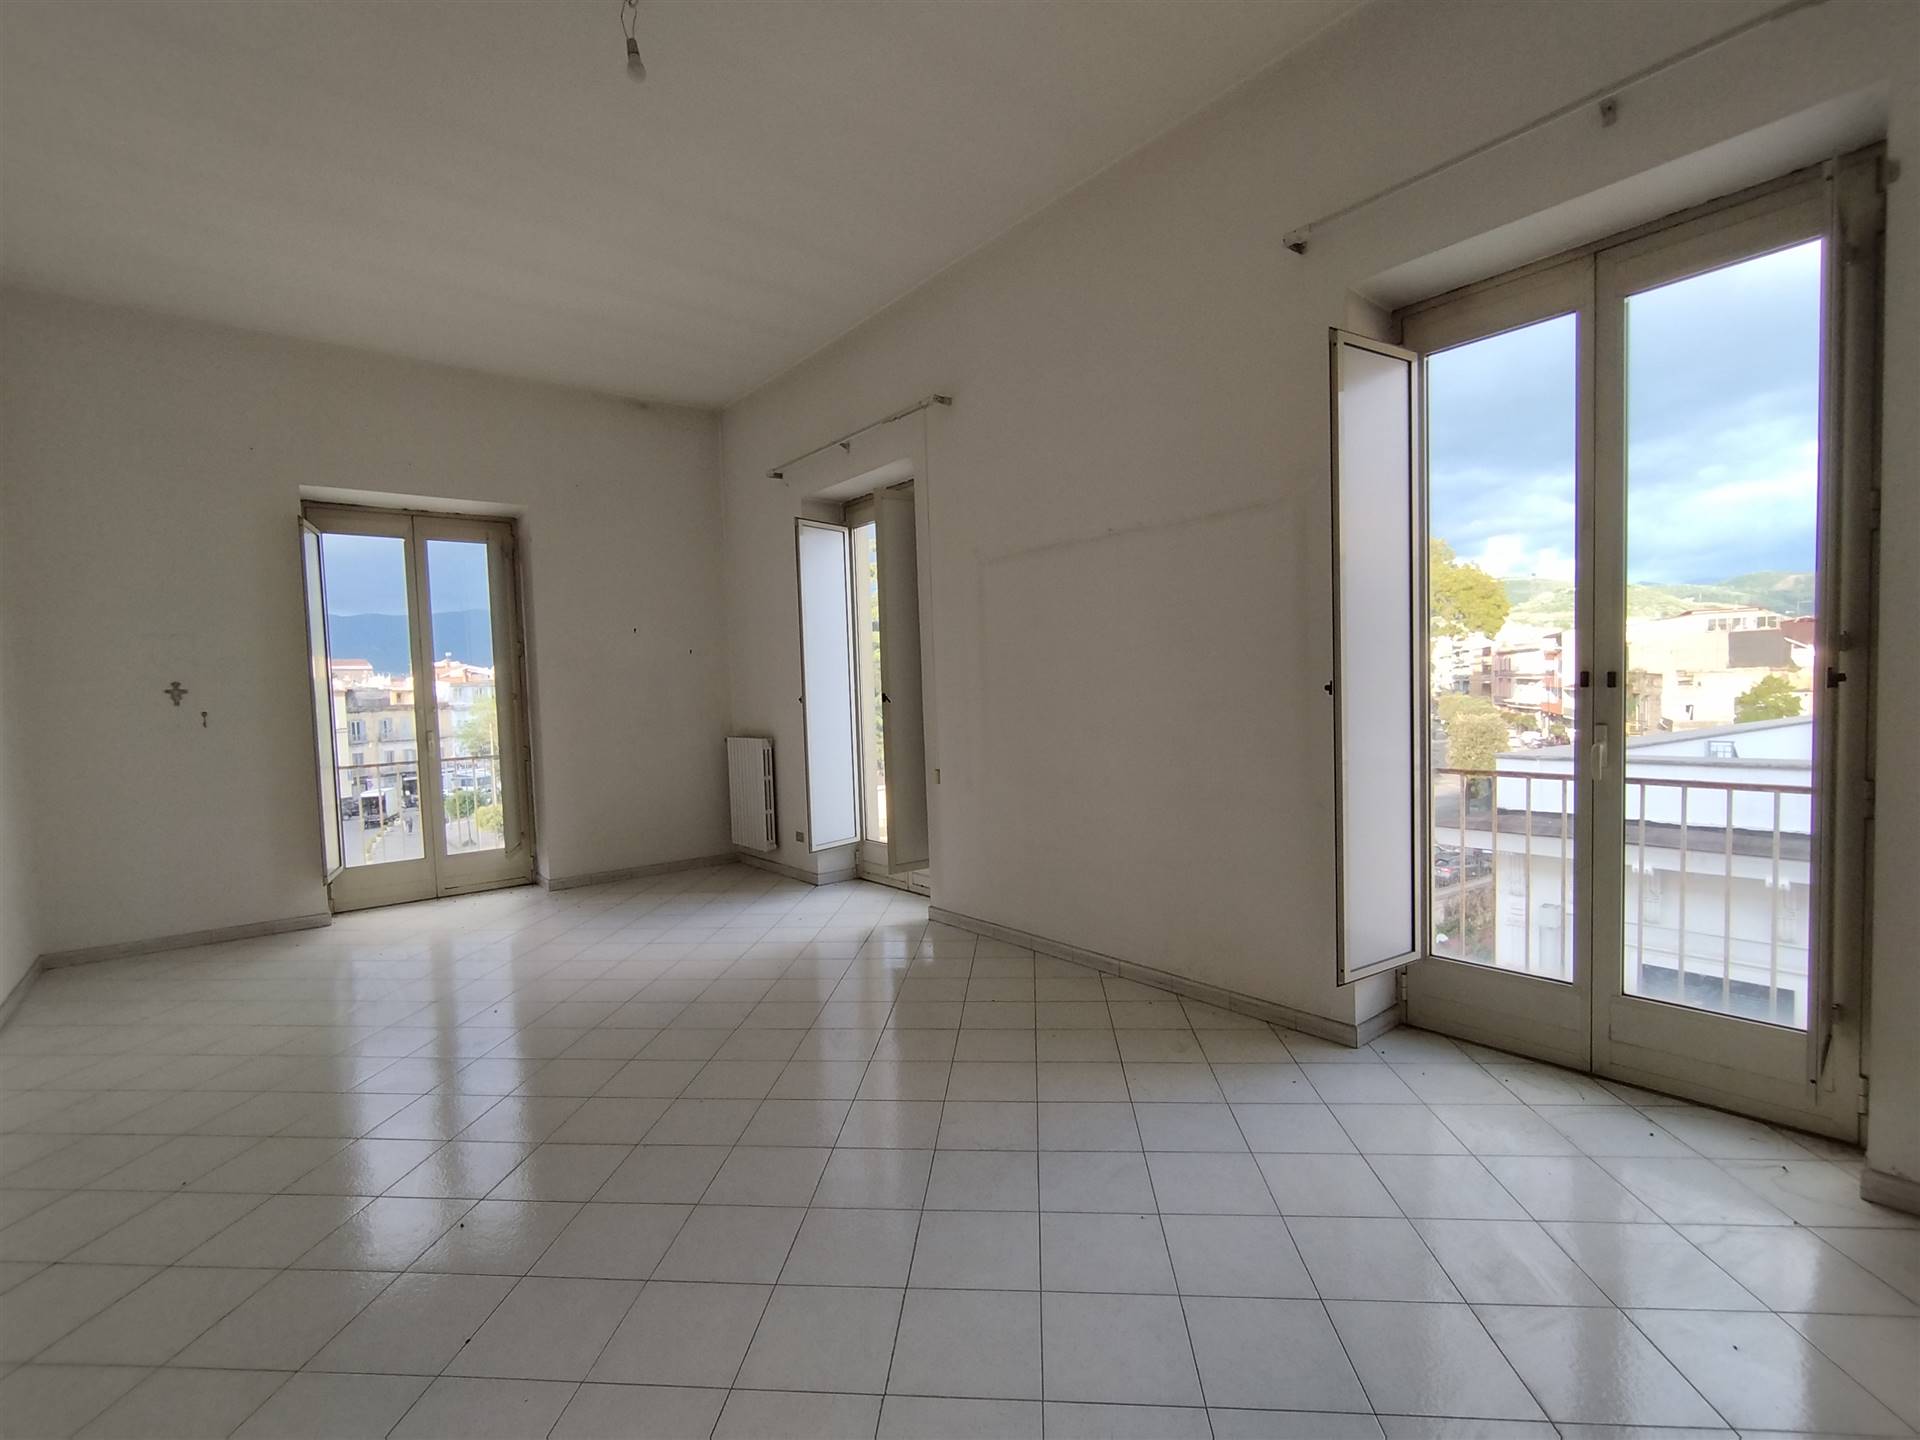 Appartamento in vendita a Nola, 5 locali, zona Località: NOLA, prezzo € 110.000 | PortaleAgenzieImmobiliari.it